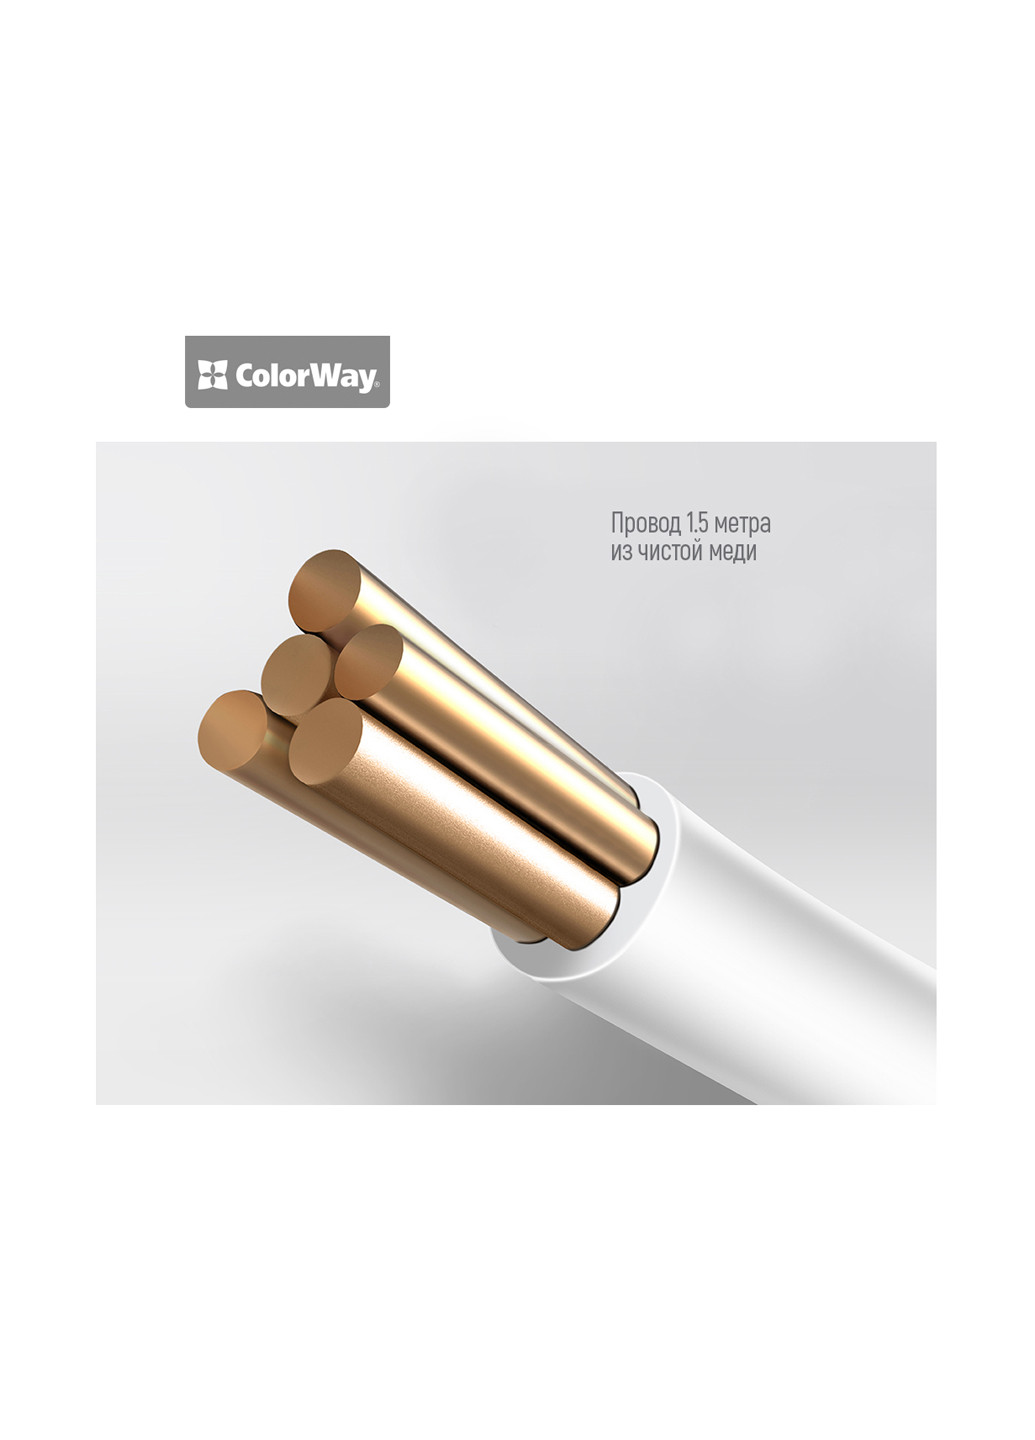 Мережевий зарядний пристрій СolorWay USB QUICK CHARGER 6X USB біле (CW-CHS06QW) Colorway sb quick charger 6x usb белое (cw-chs06qw) (136066175)